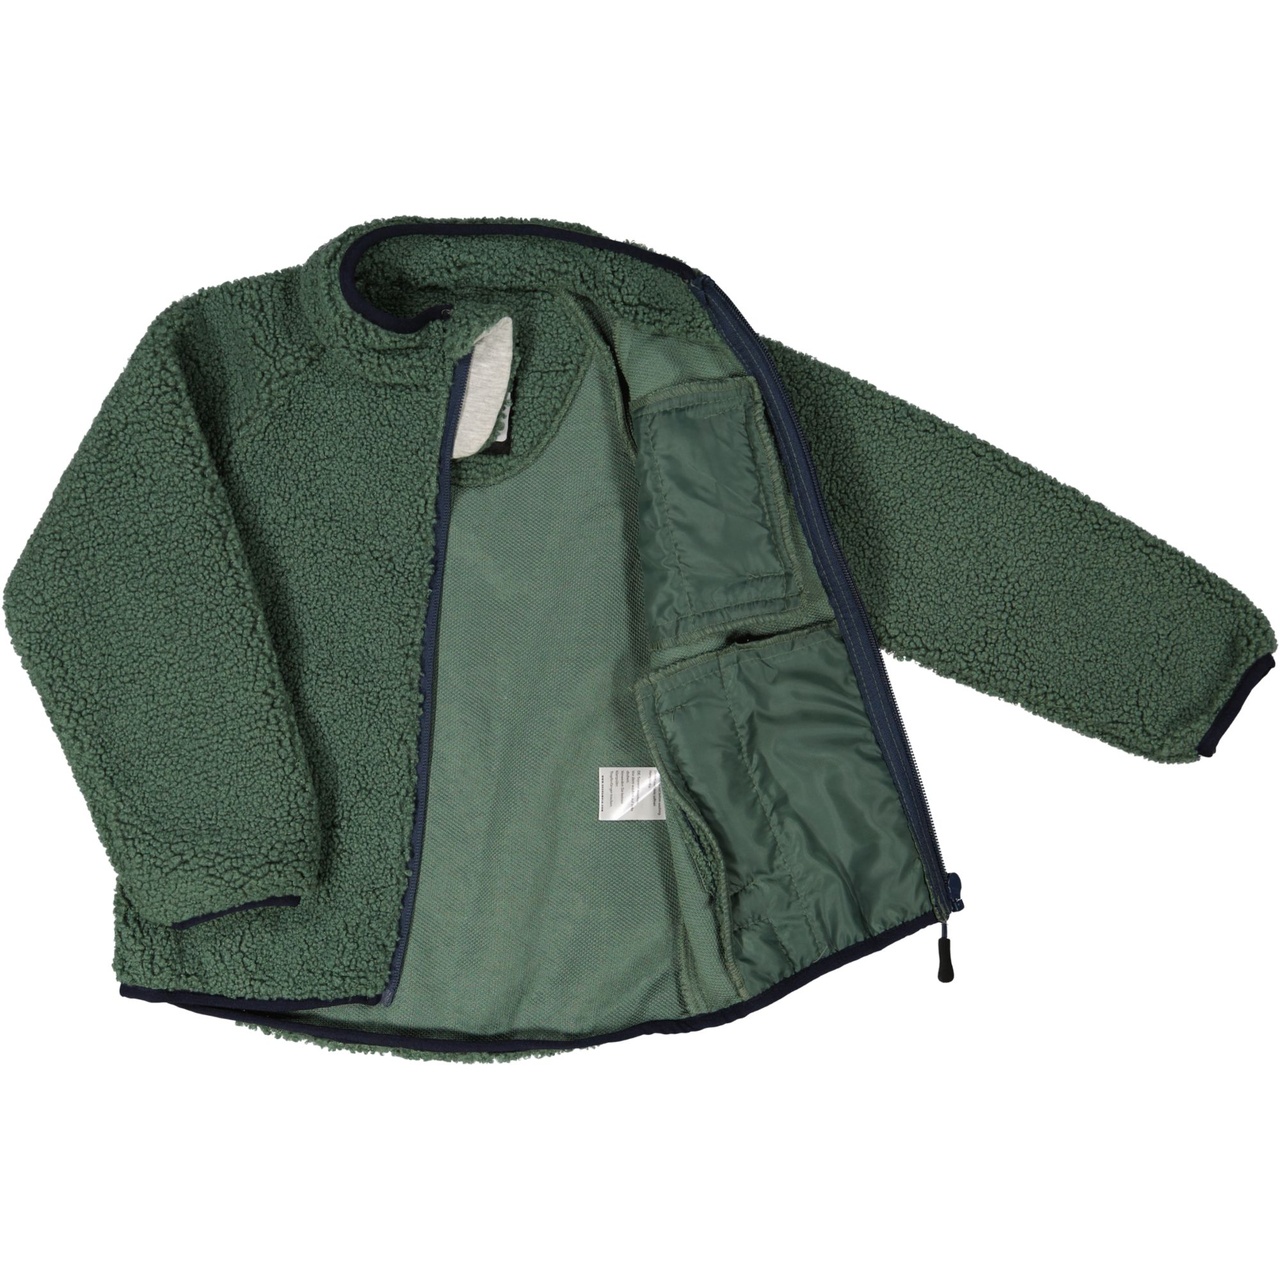 Pile jacket Moss green  98/104